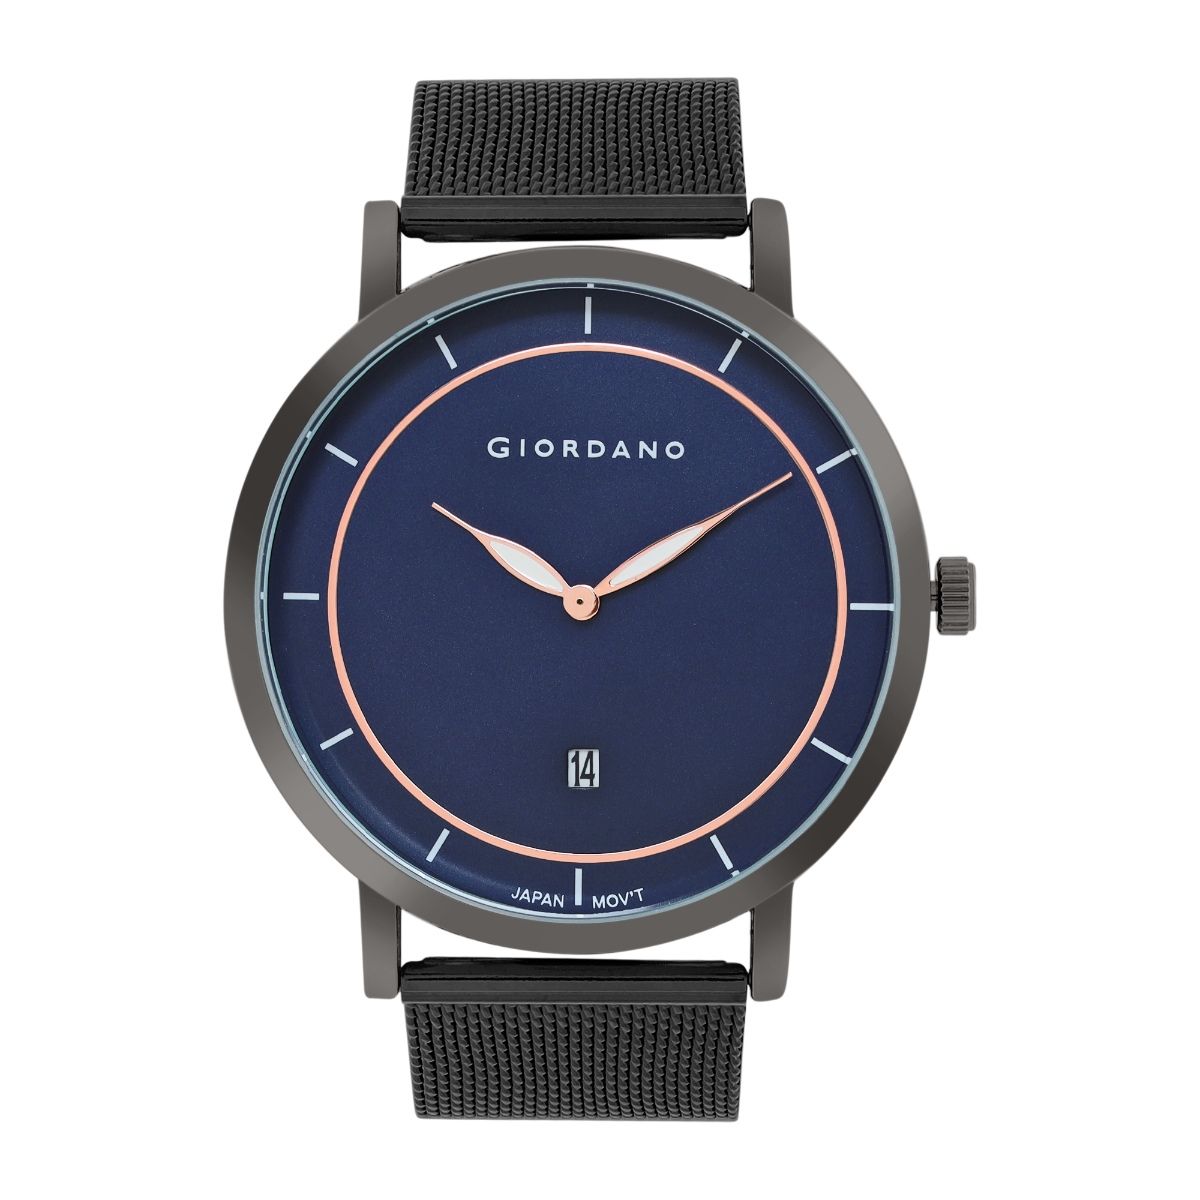 Buy Giordano Black Analog Wrist Watch for Men - GZ-50091 online